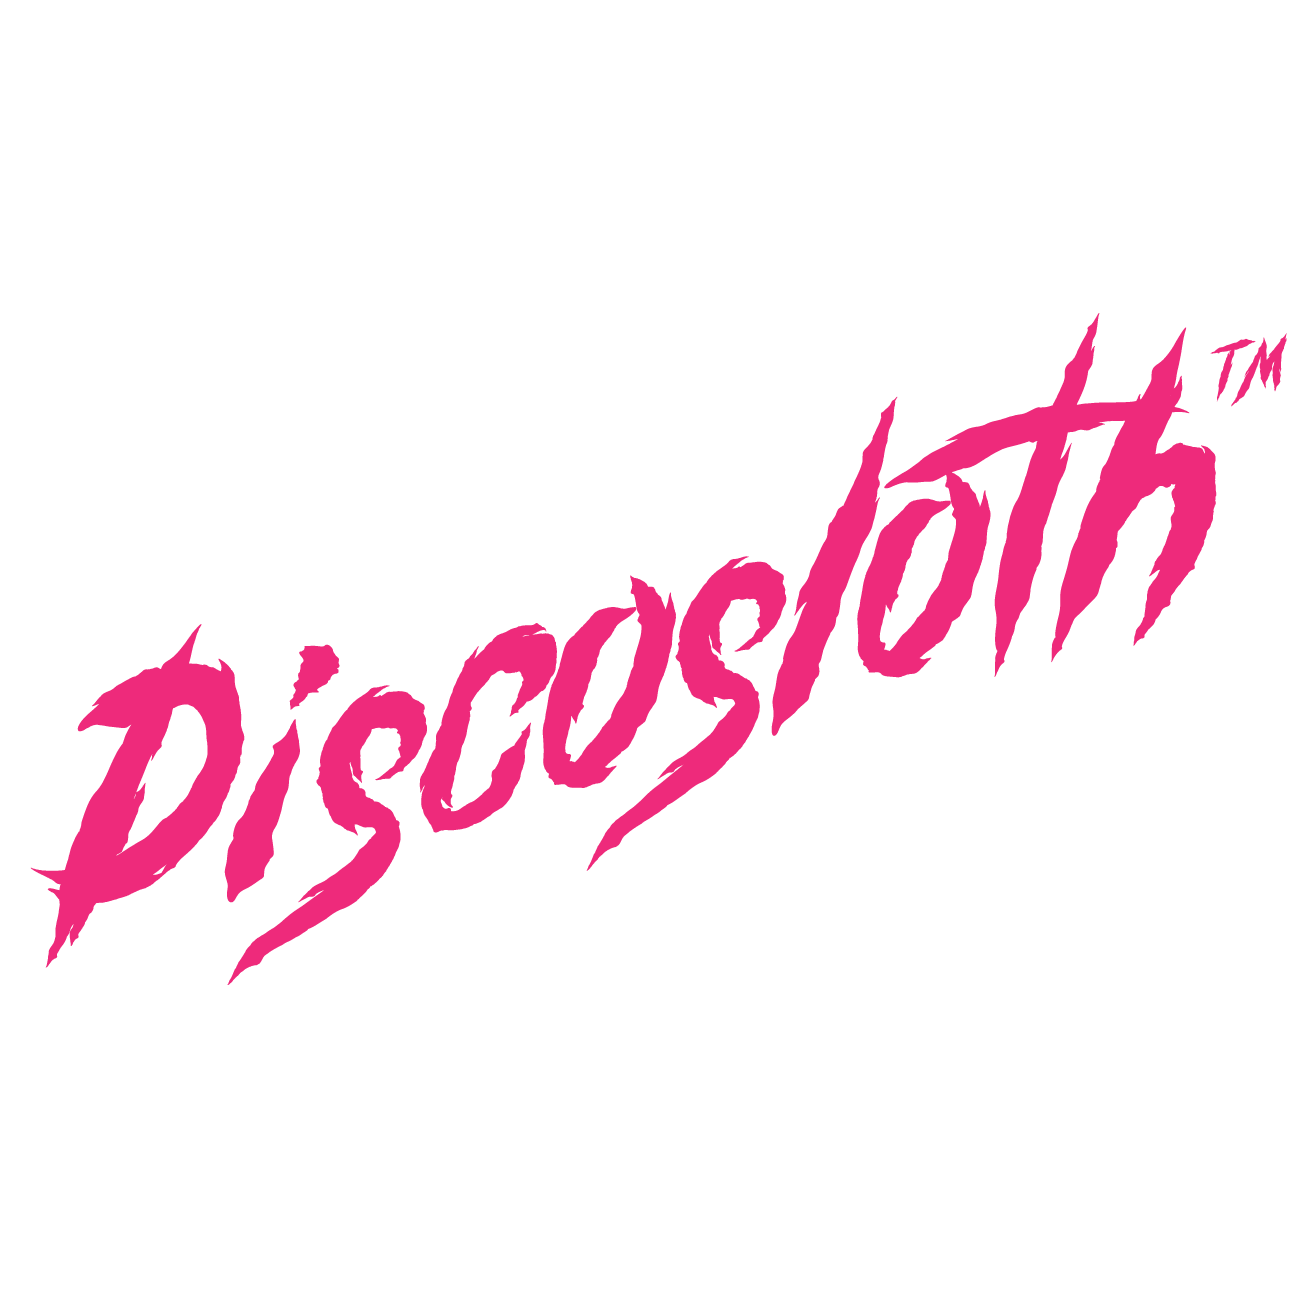 Discosloth